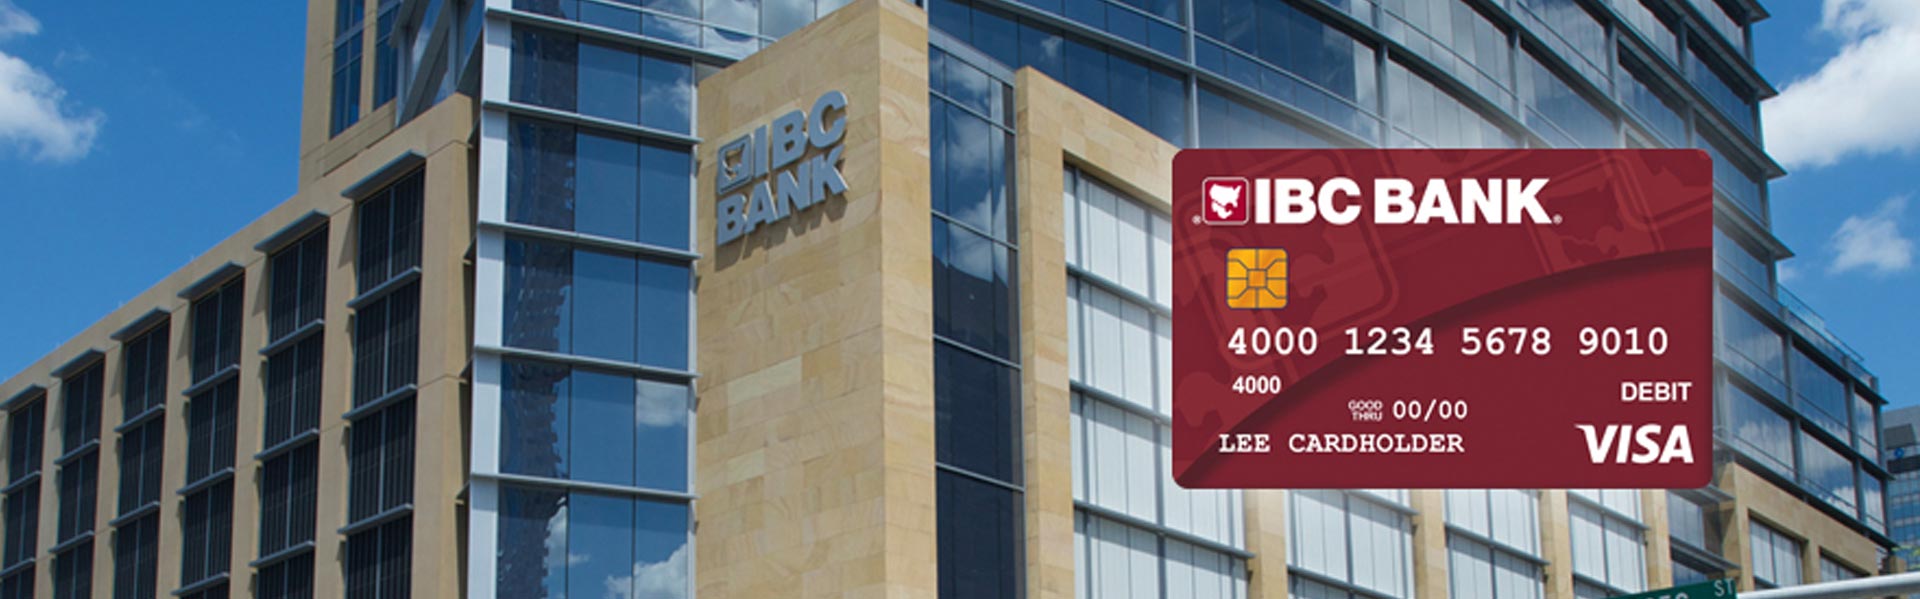 Tarjeta de débito Visa de IBC Bank